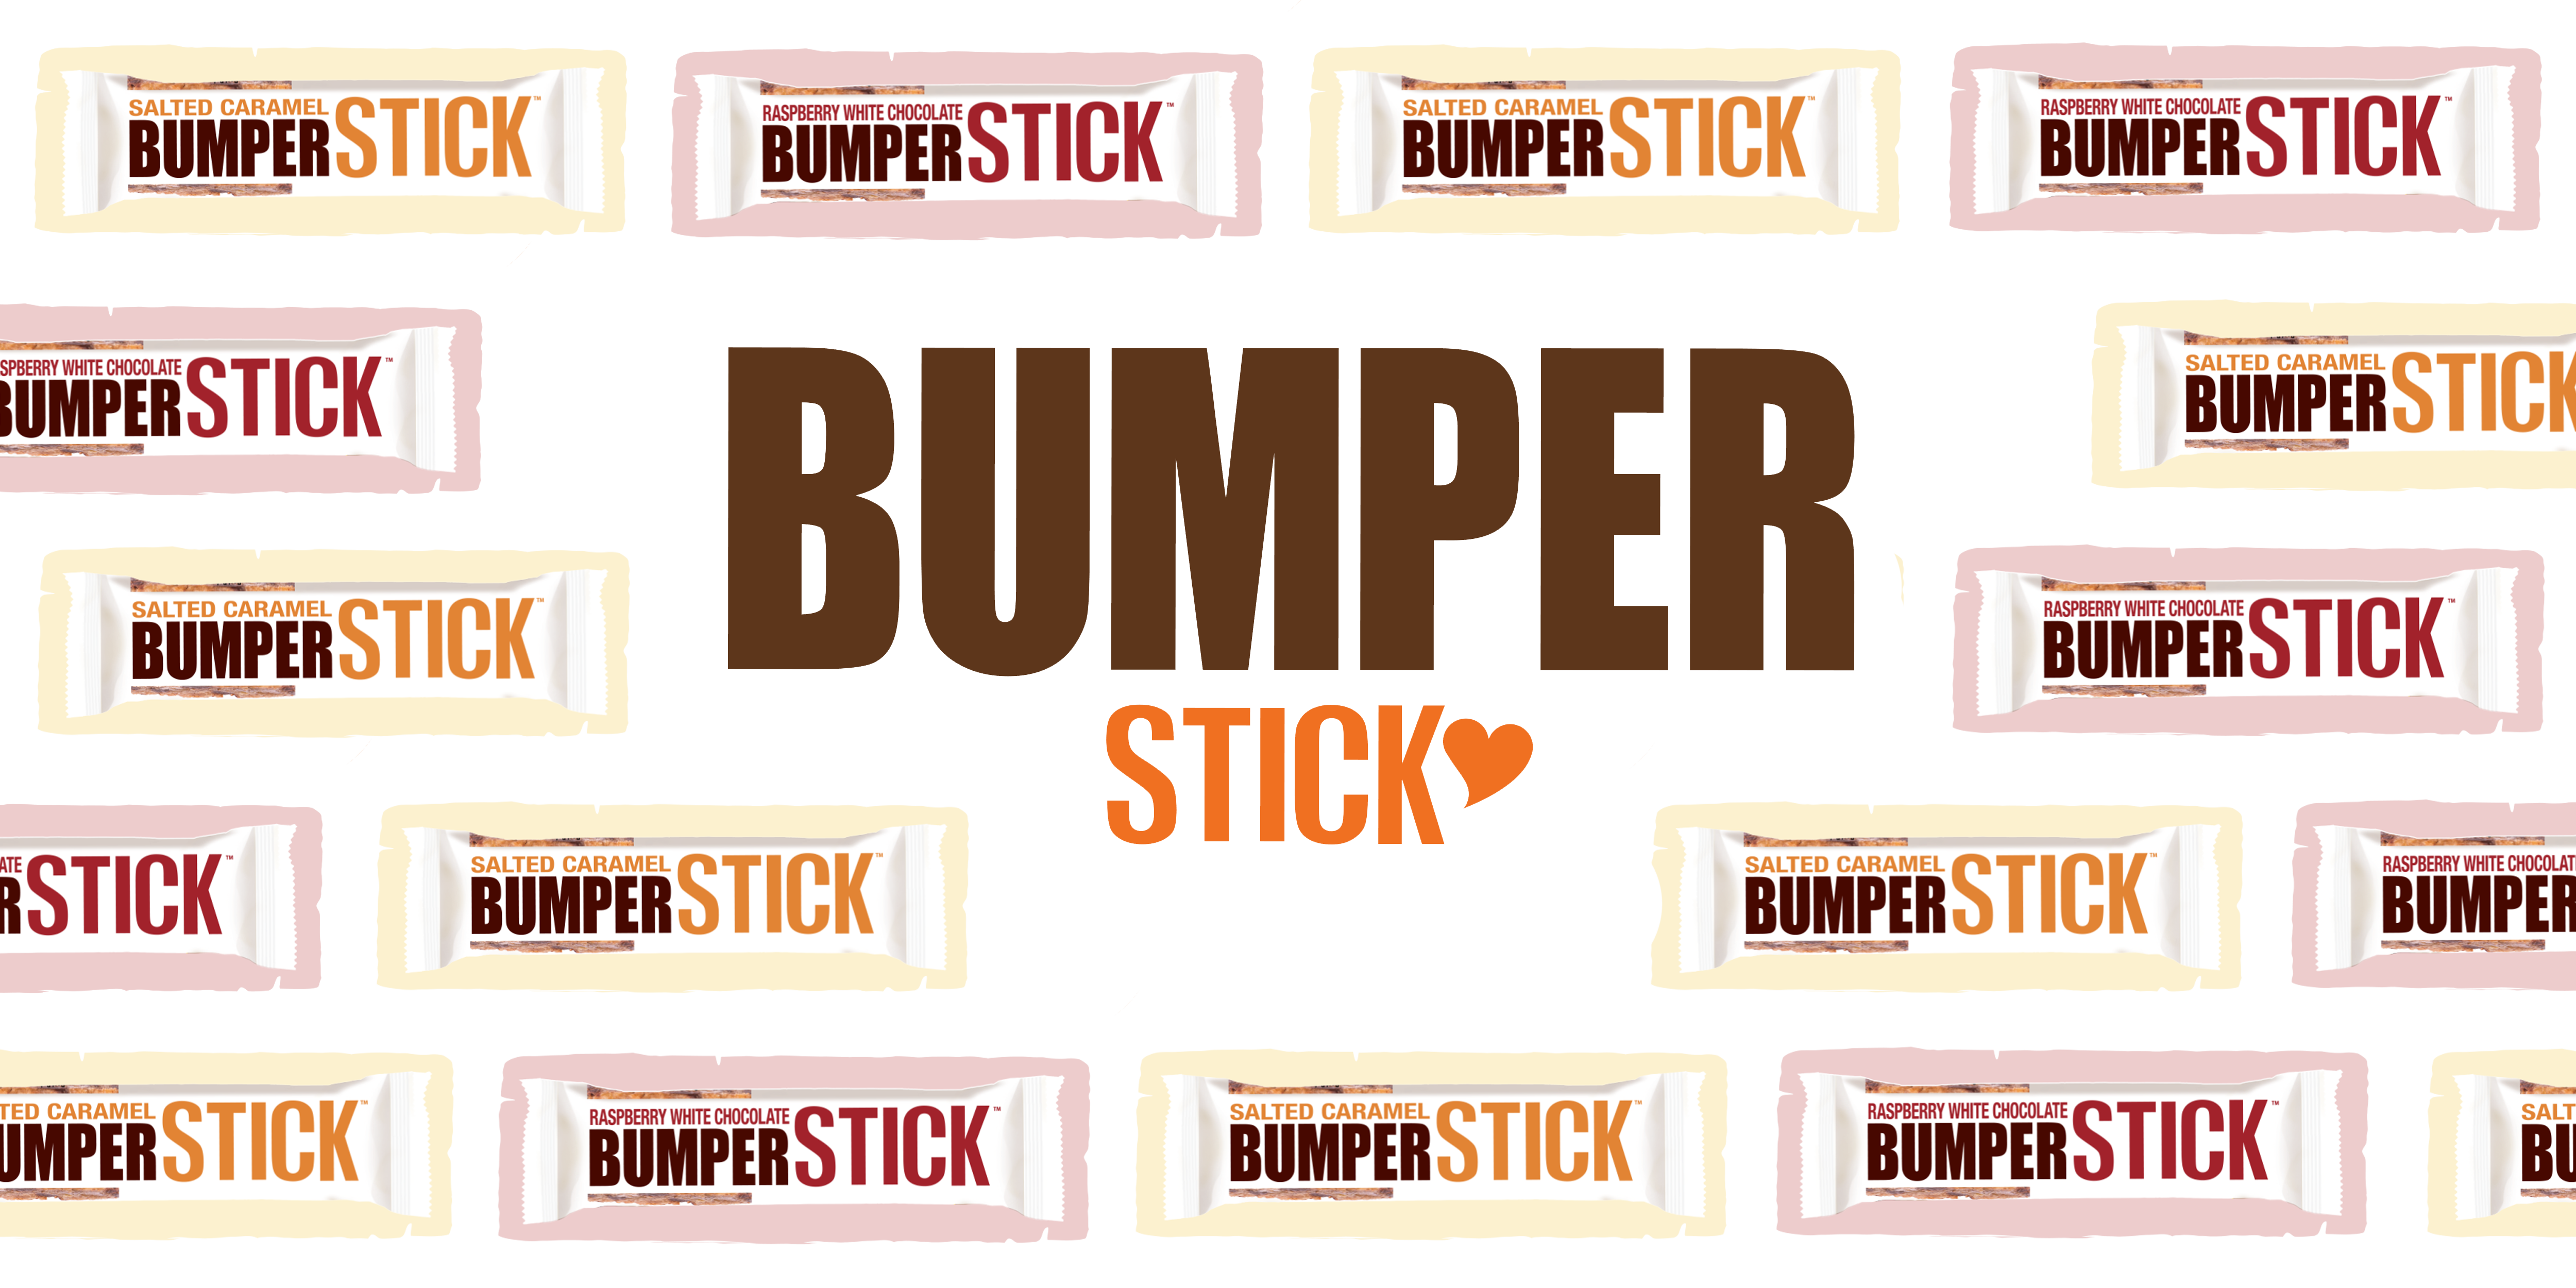 bumper, バンパー, 公式サイト, home page, シリアルバー, 洋菓子, チョコレート, cereal bar, bumper stick, バンパースティック